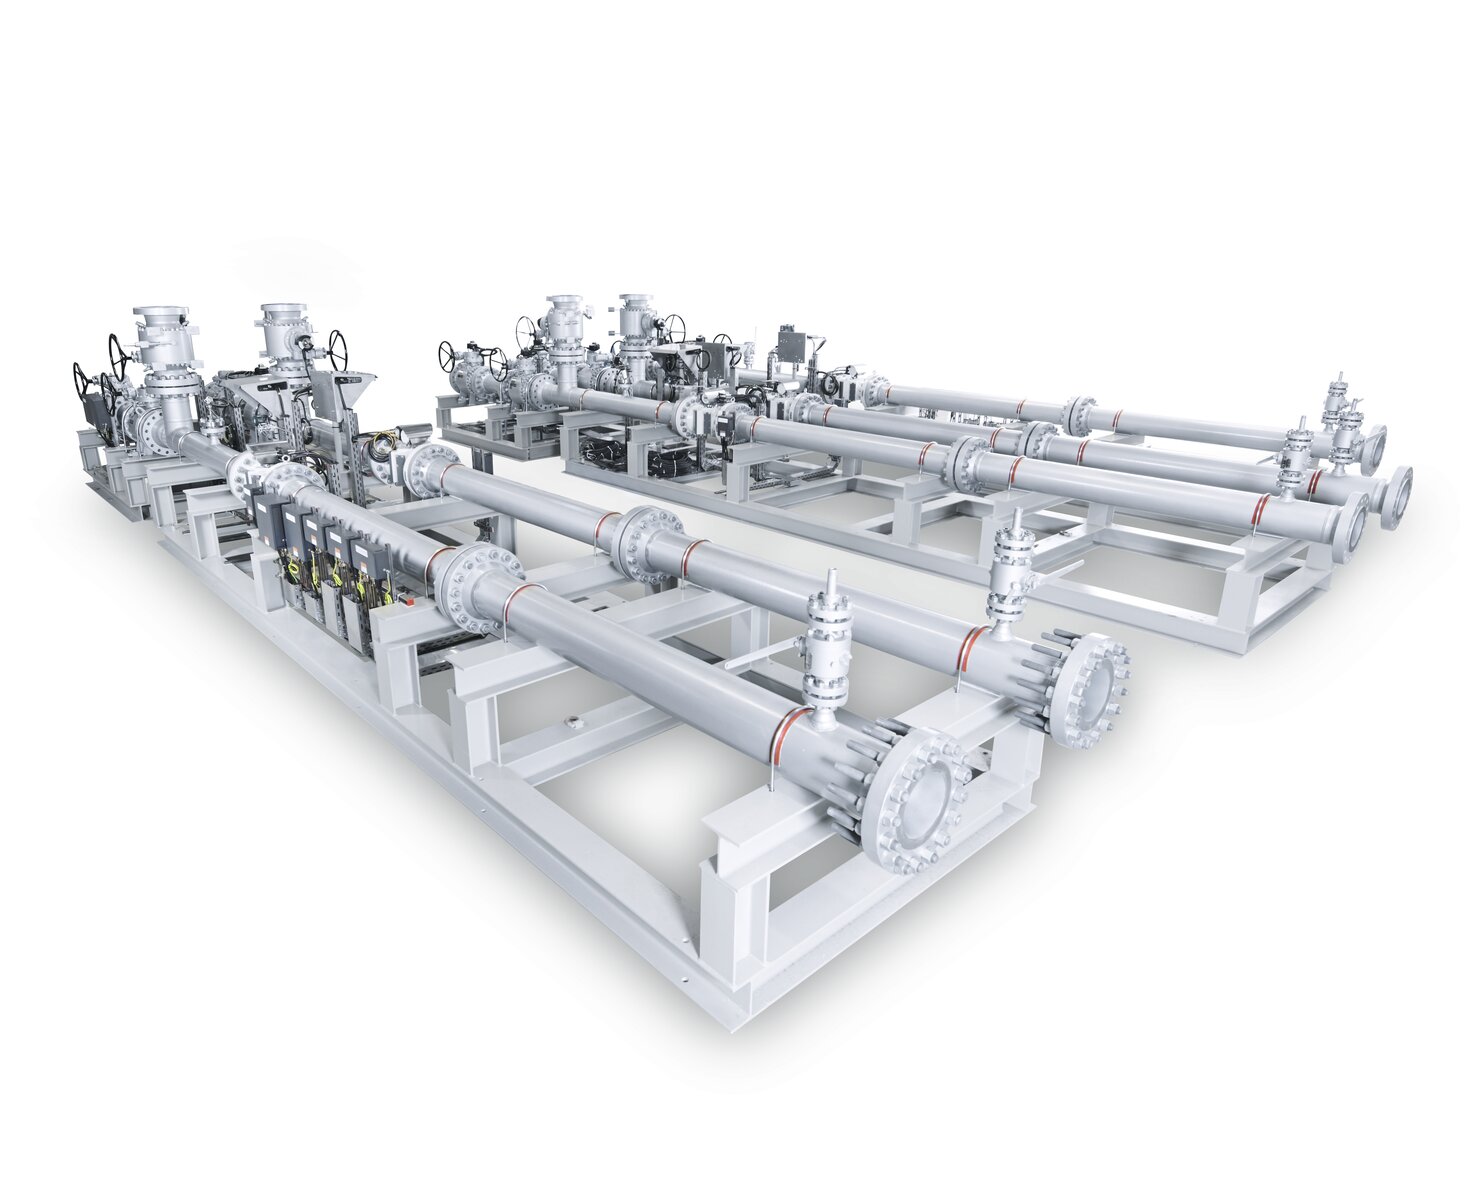 Representación visual de la instalación de varios caudalímetros de SICK en tuberías de gas natural